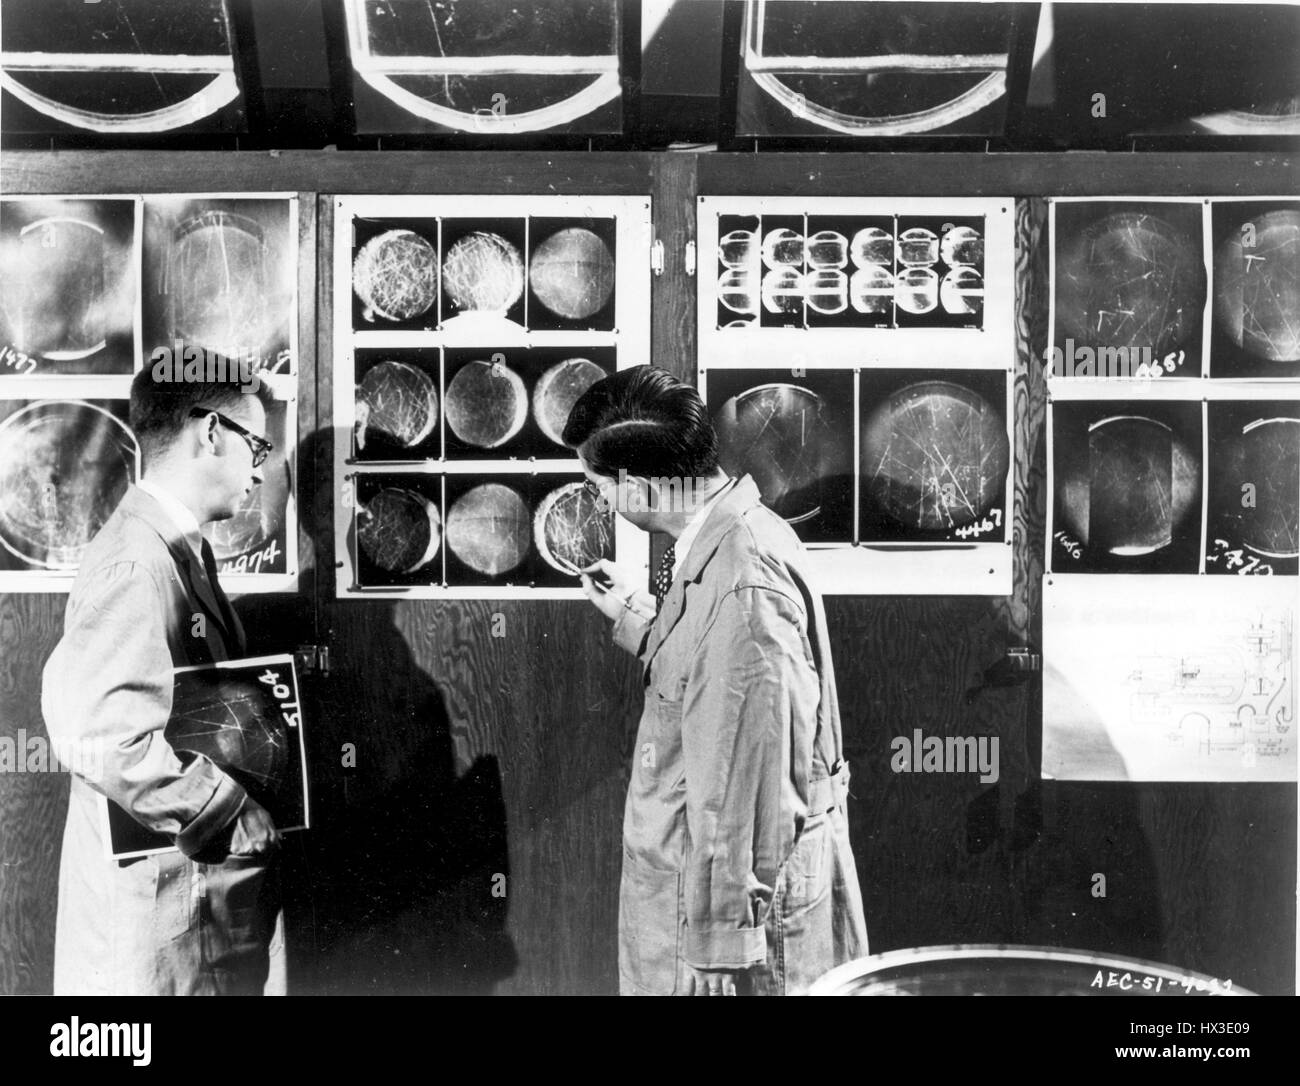 Zwei Physiker mit Brookhaven National Laboratory untersuchen Wolkenkammer Fotos, Upton, New York, 1951. Bild mit freundlicher Genehmigung US Department of Energy. Stockfoto